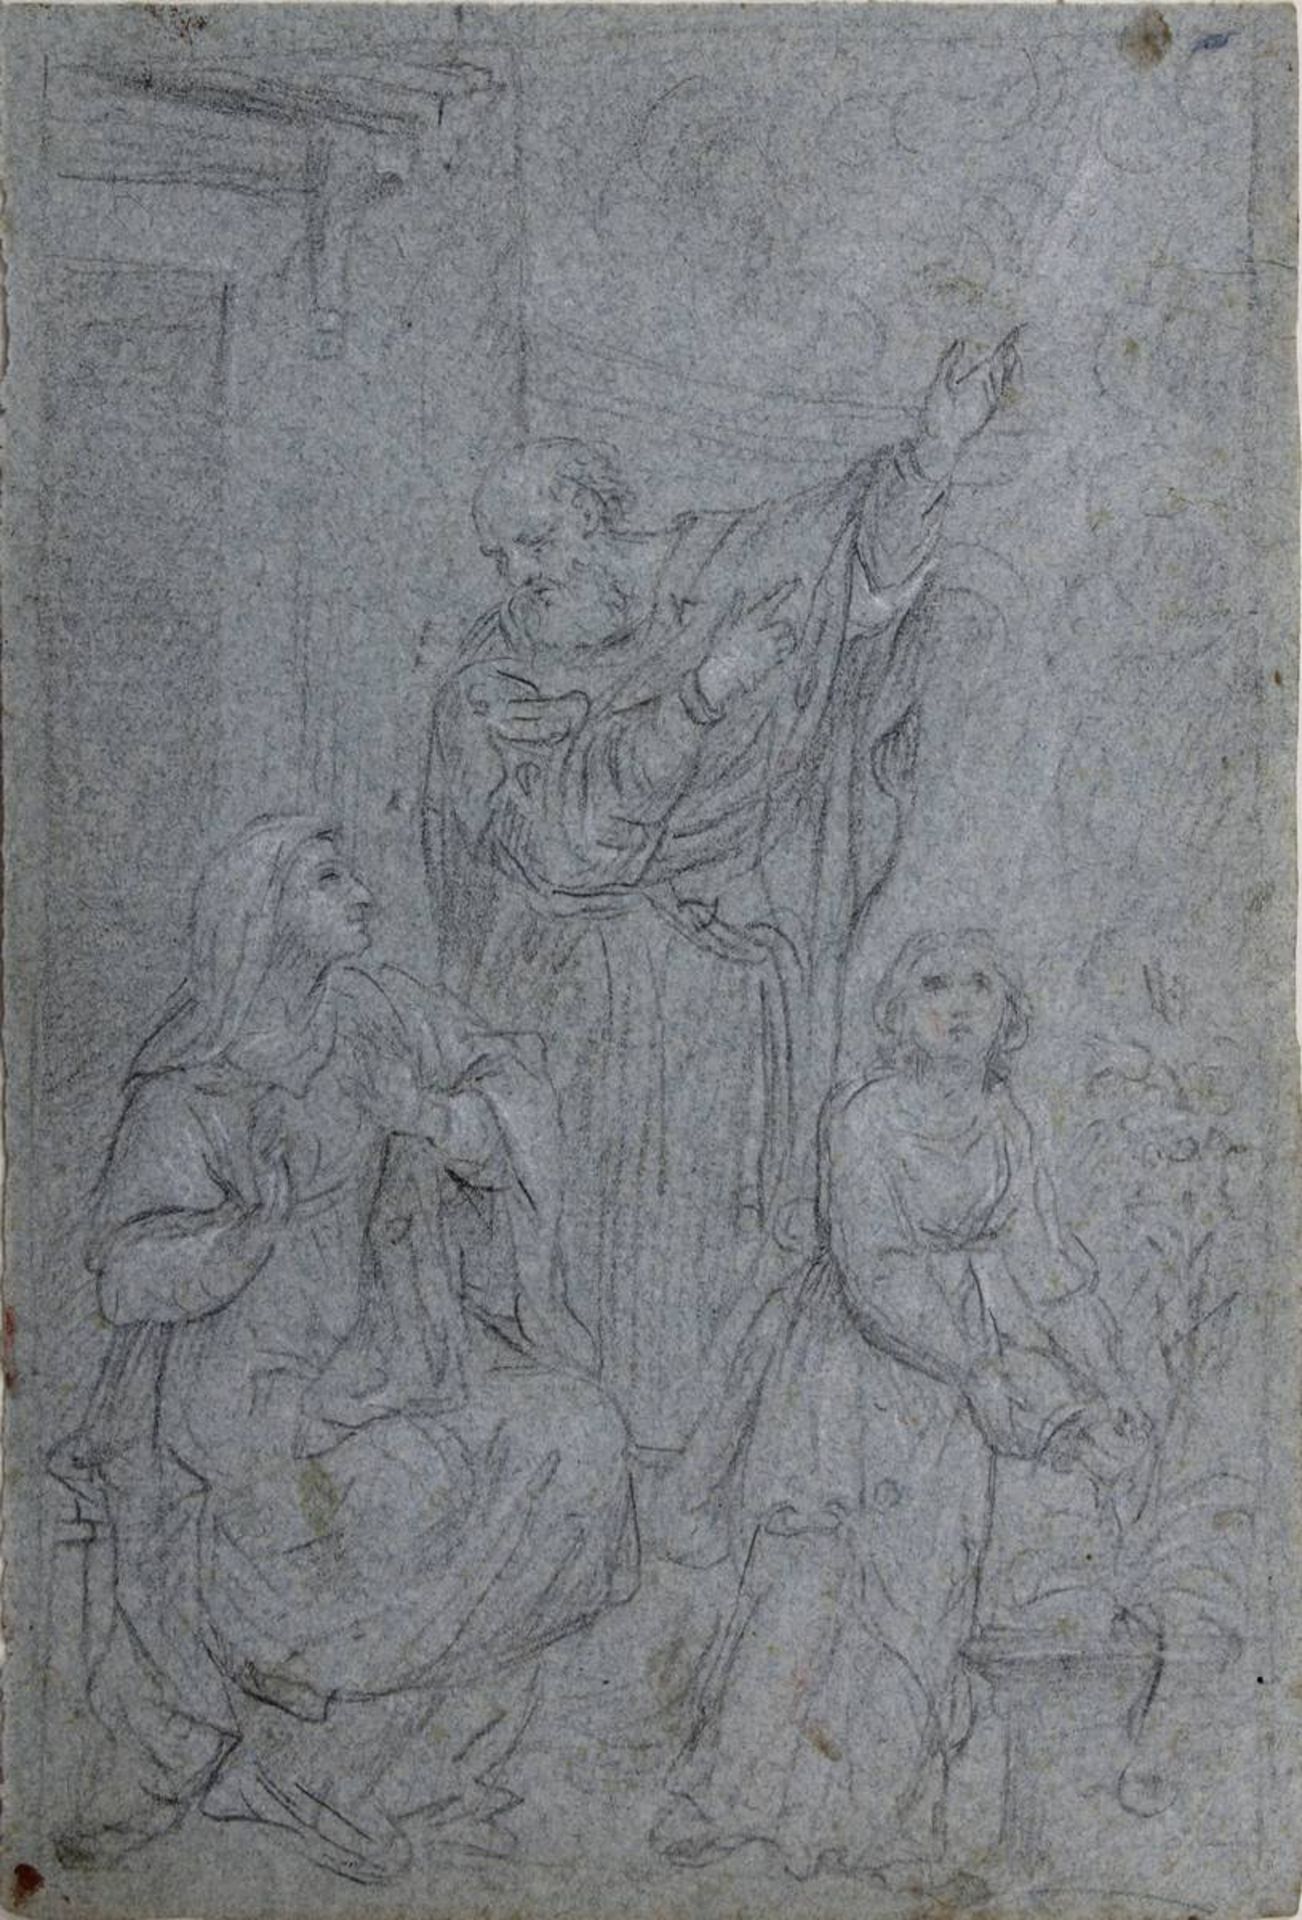 Zeichner 18. Jh., Sechs Zeichnungen von Heiligen und Märtyrern, u. a. Stephanus, Sebastian, Antonius - Bild 5 aus 7